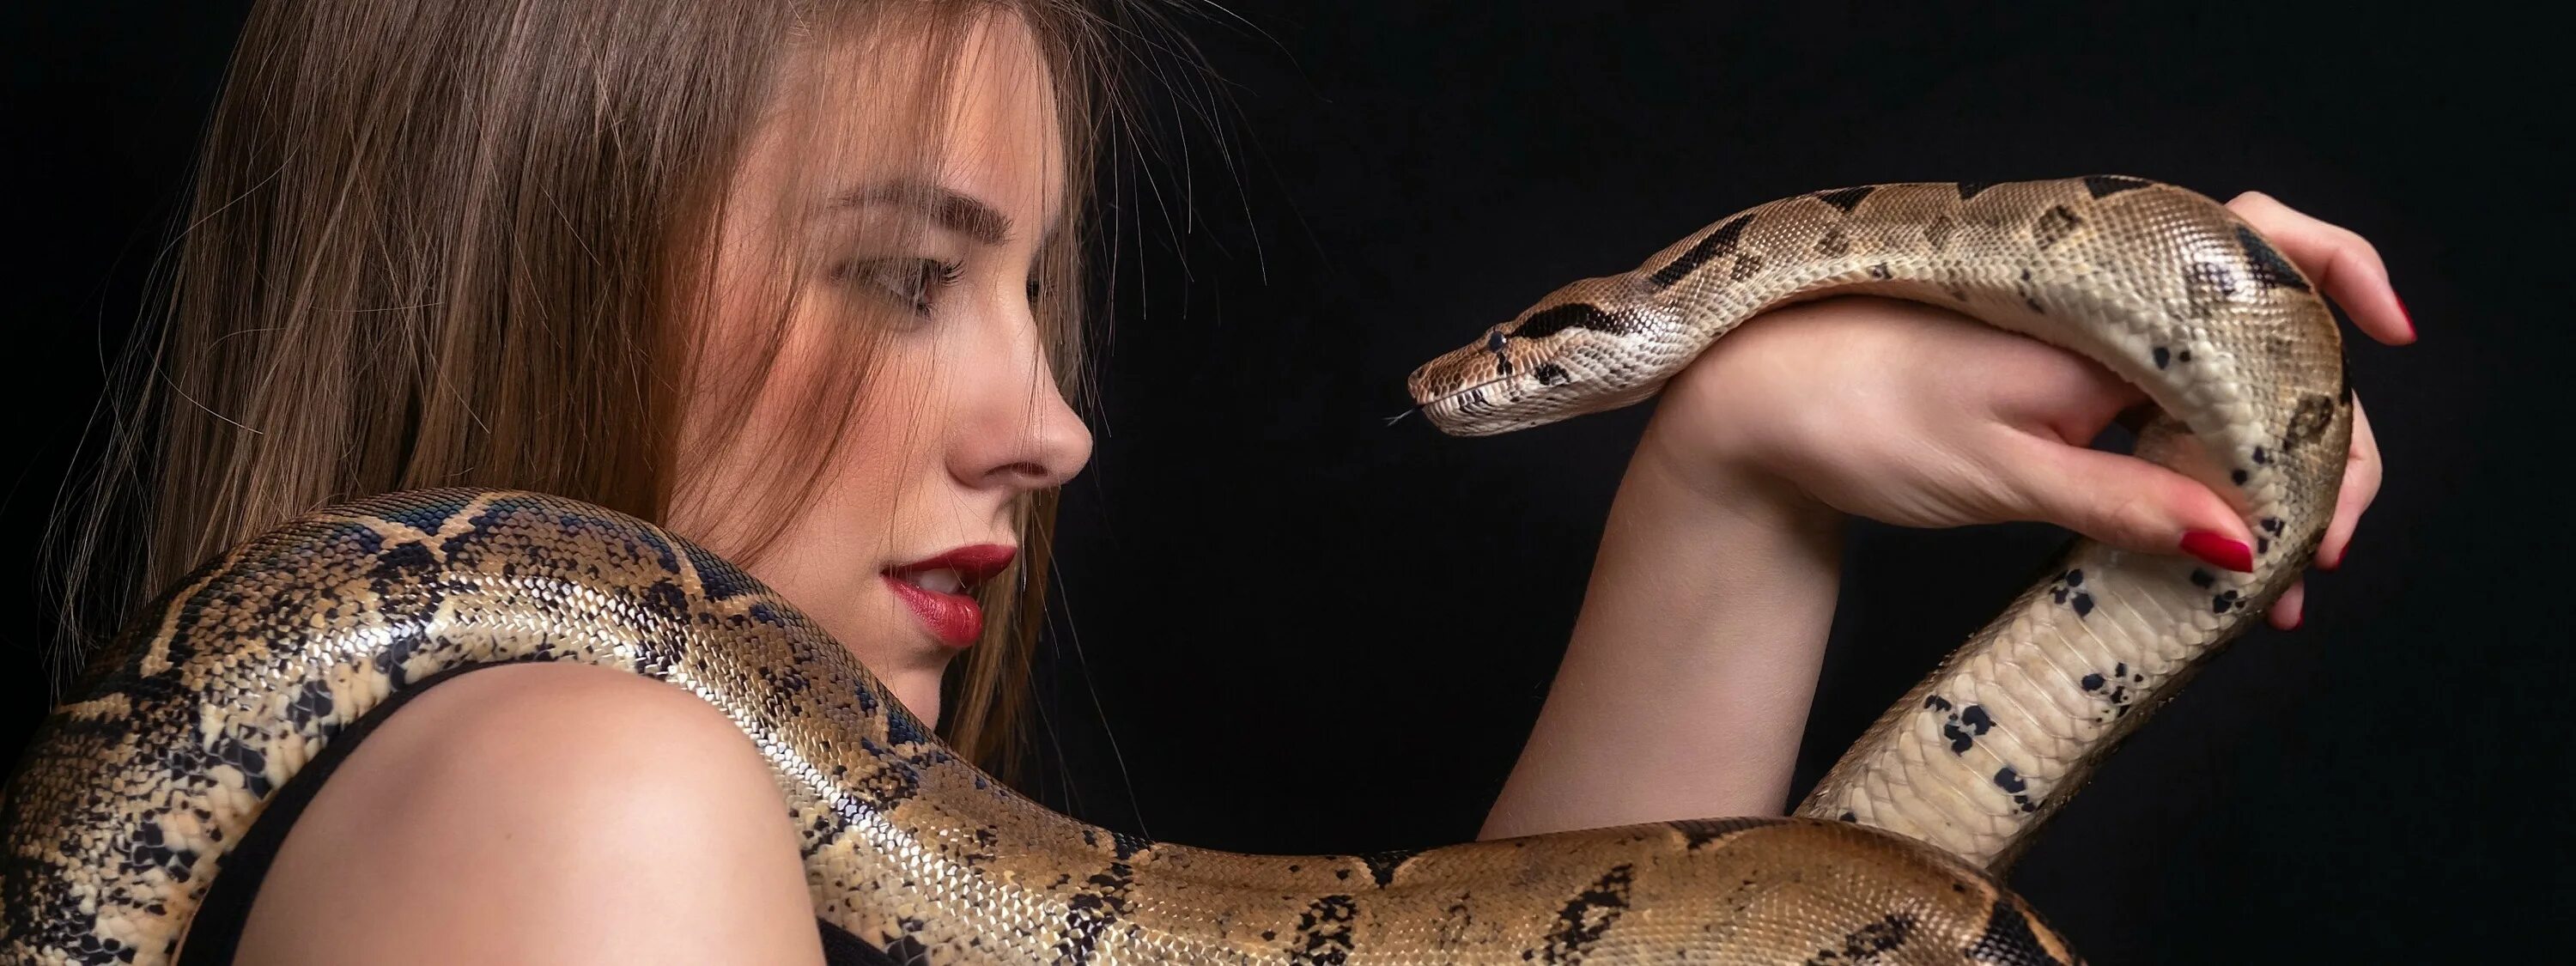 Девочка змейка. Анаконда питон и женщина. Девушка змея. Фотосессия со змеями. Красивая девушка со змеей.